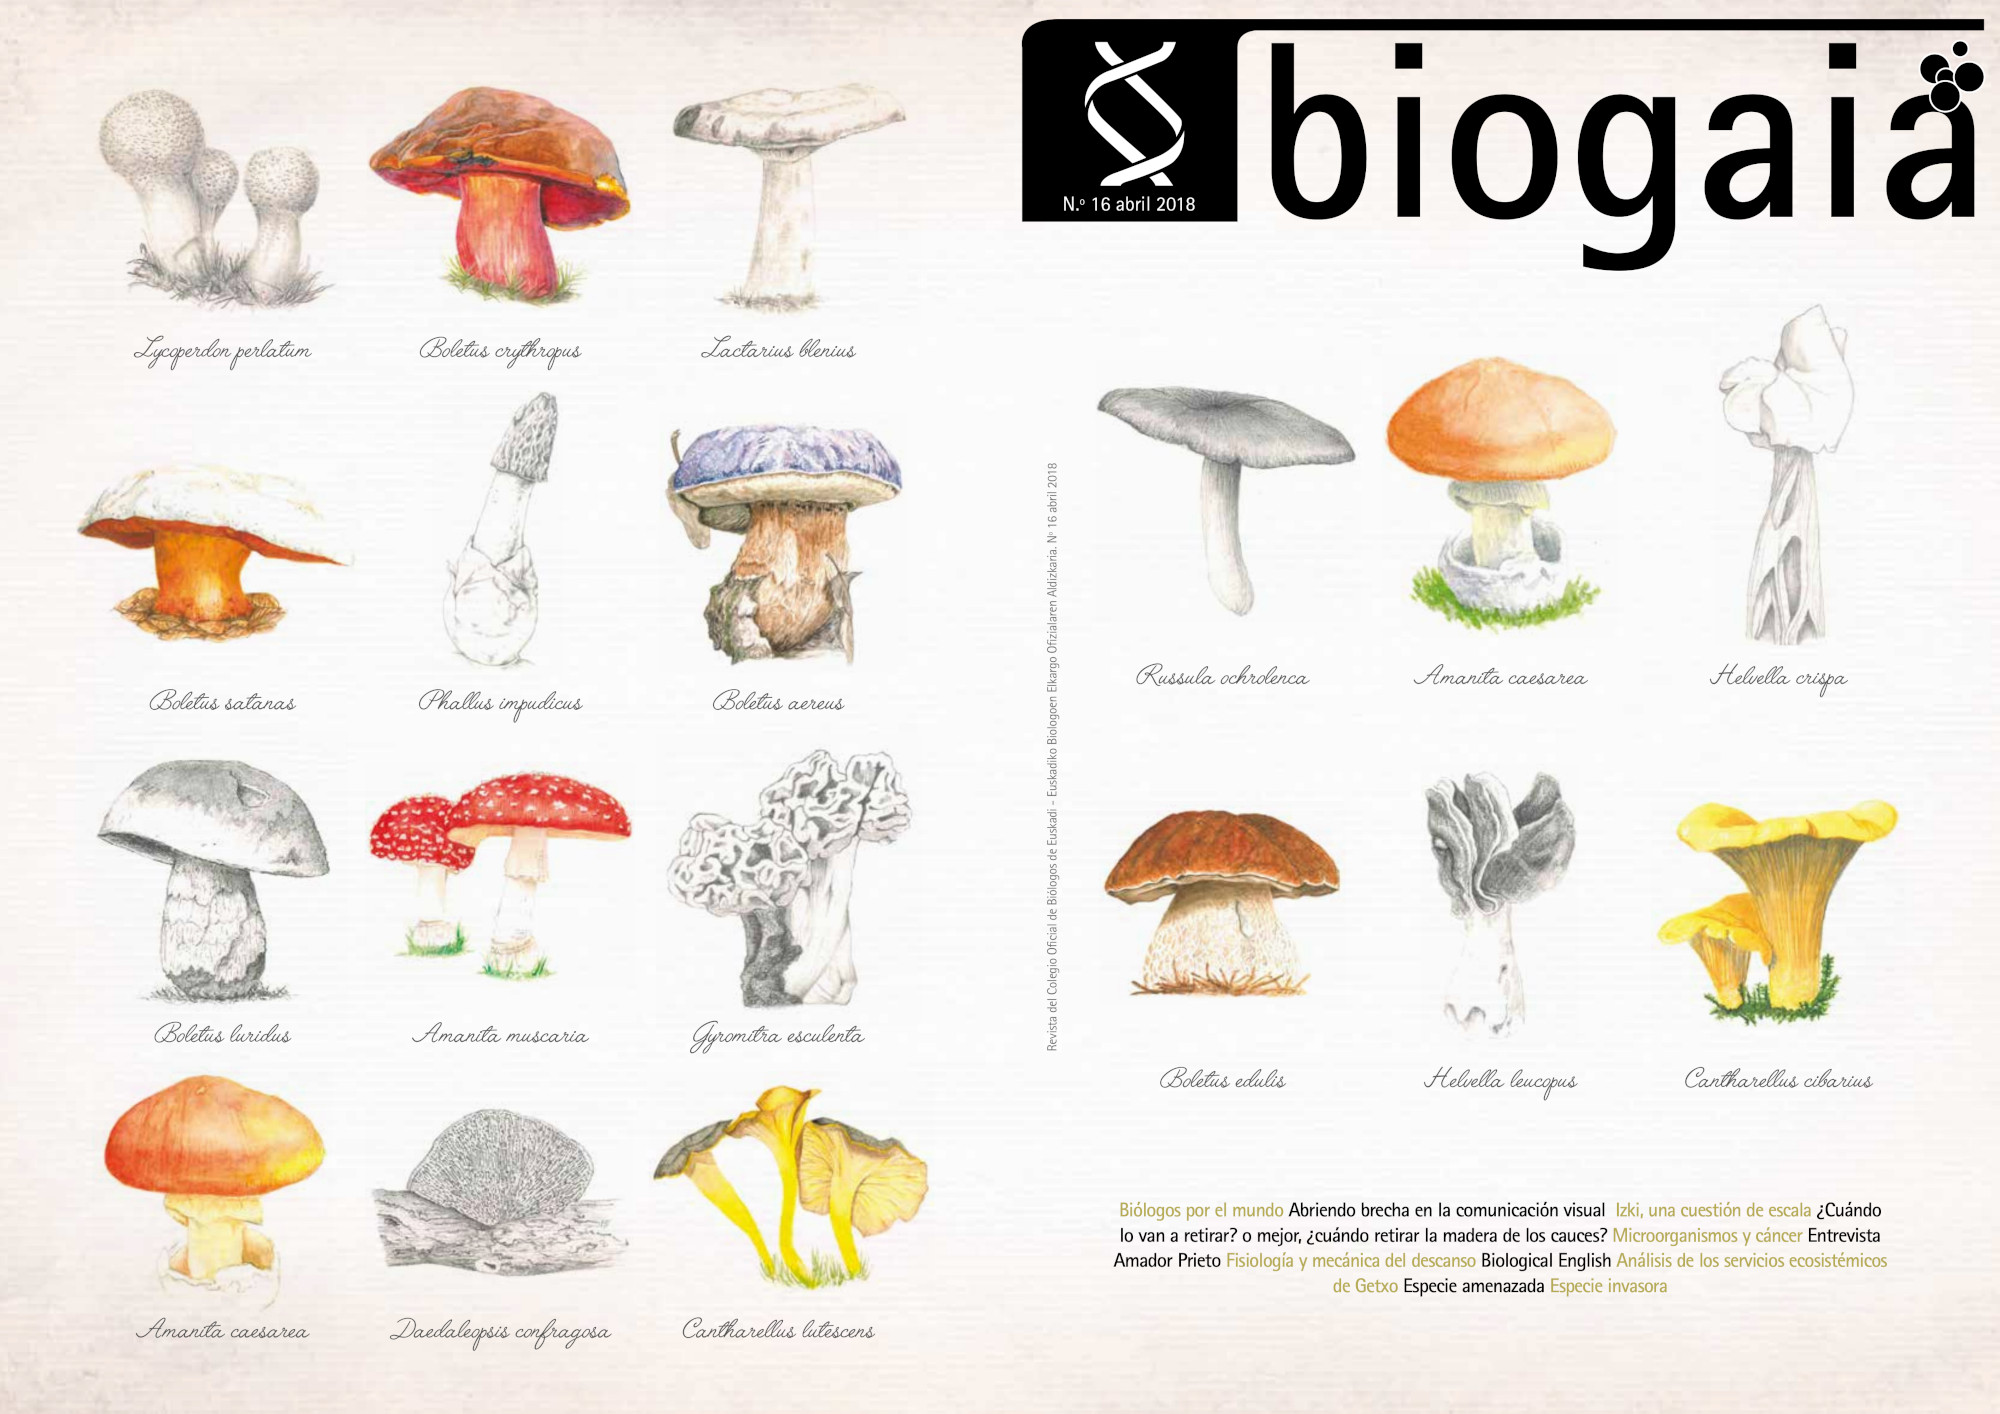 Portada de la revista BIOGAIA 2018. Ilustración de hongos.